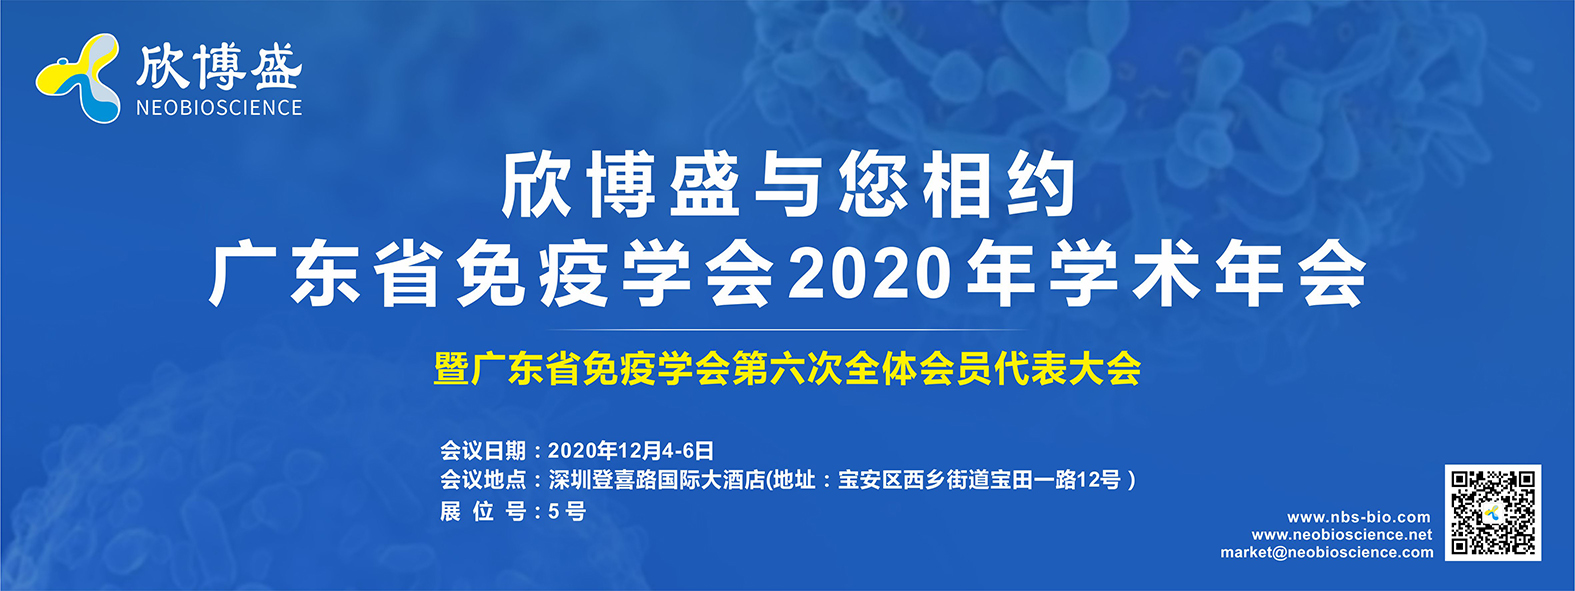 欣博盛诚邀您参加广东省免疫学会2020年学术年会